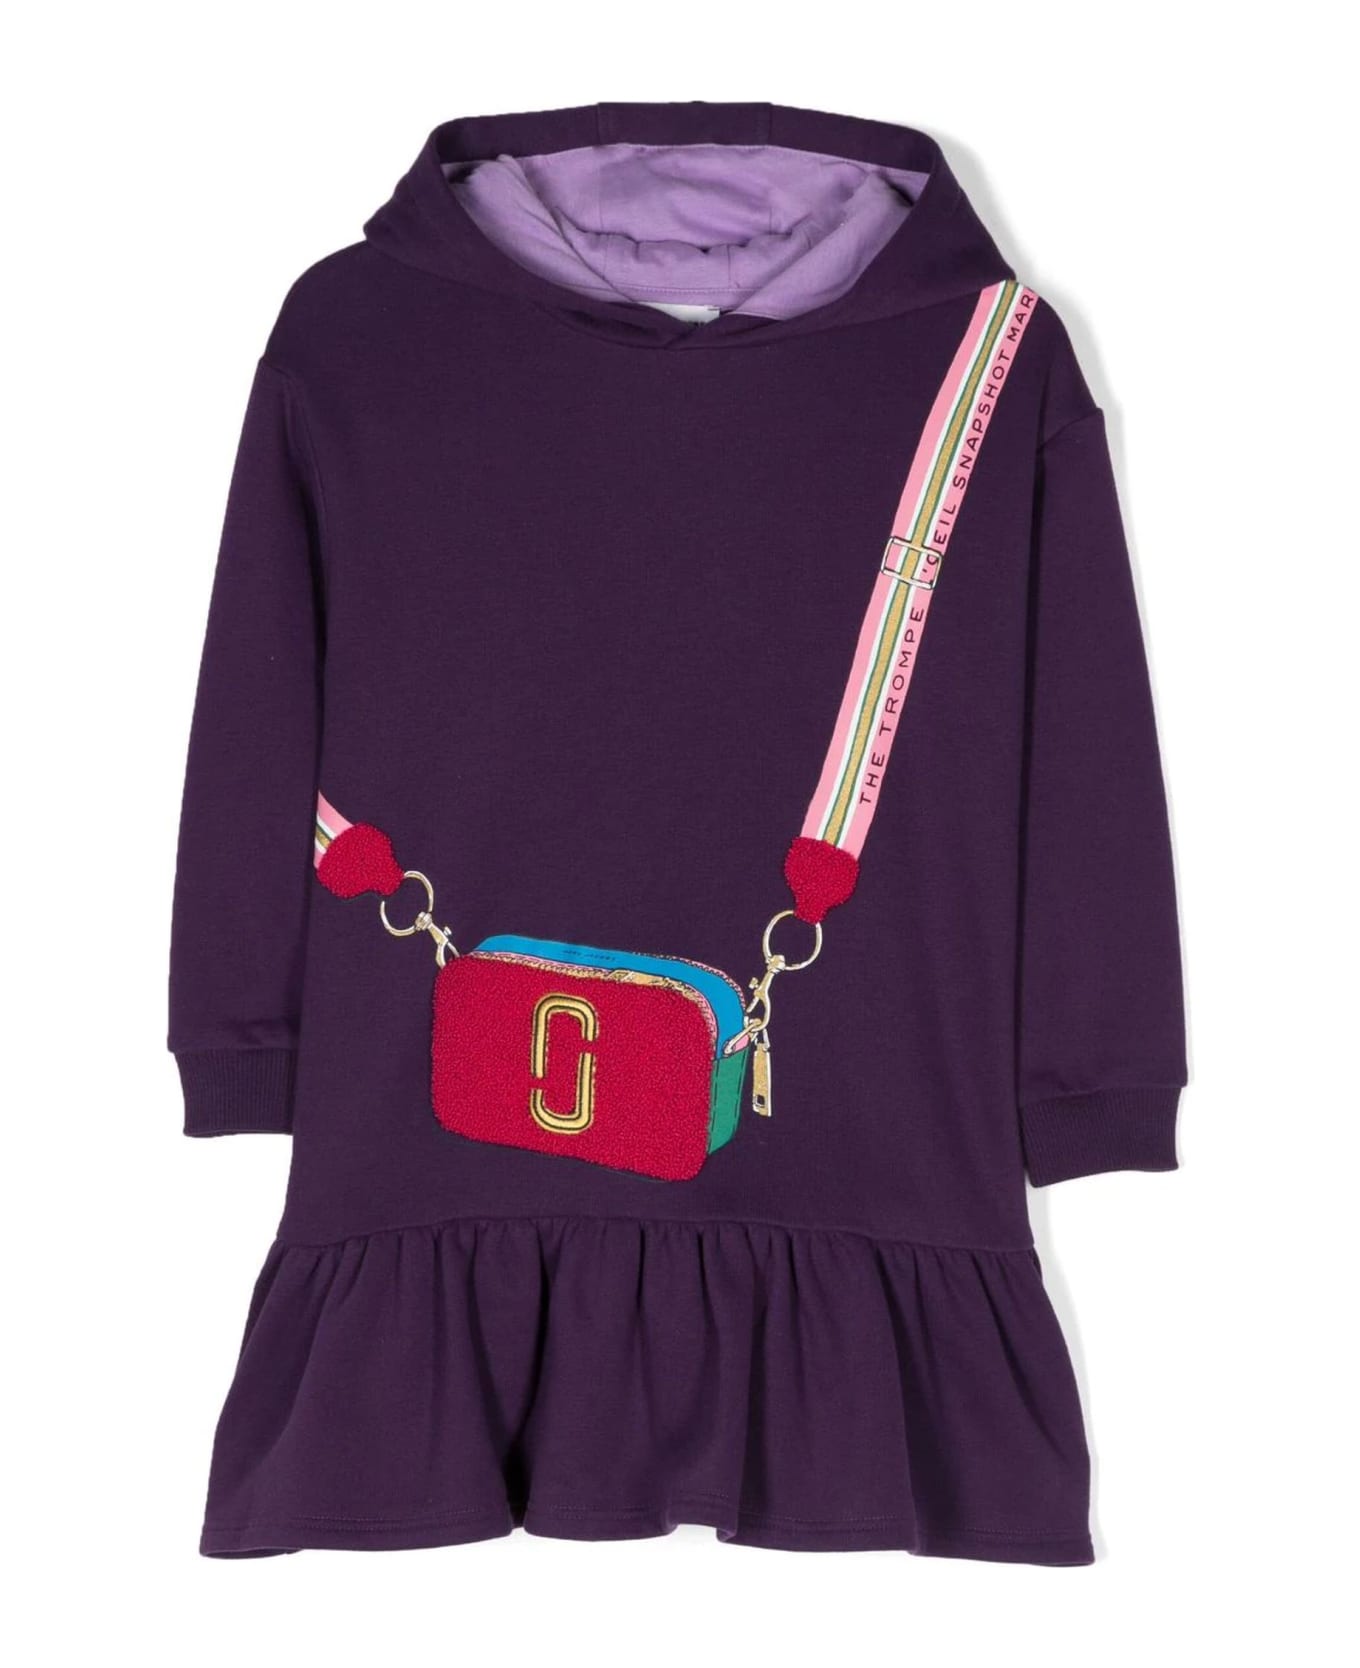 Little Marc Jacobs Purple Cotton Dress - Viola